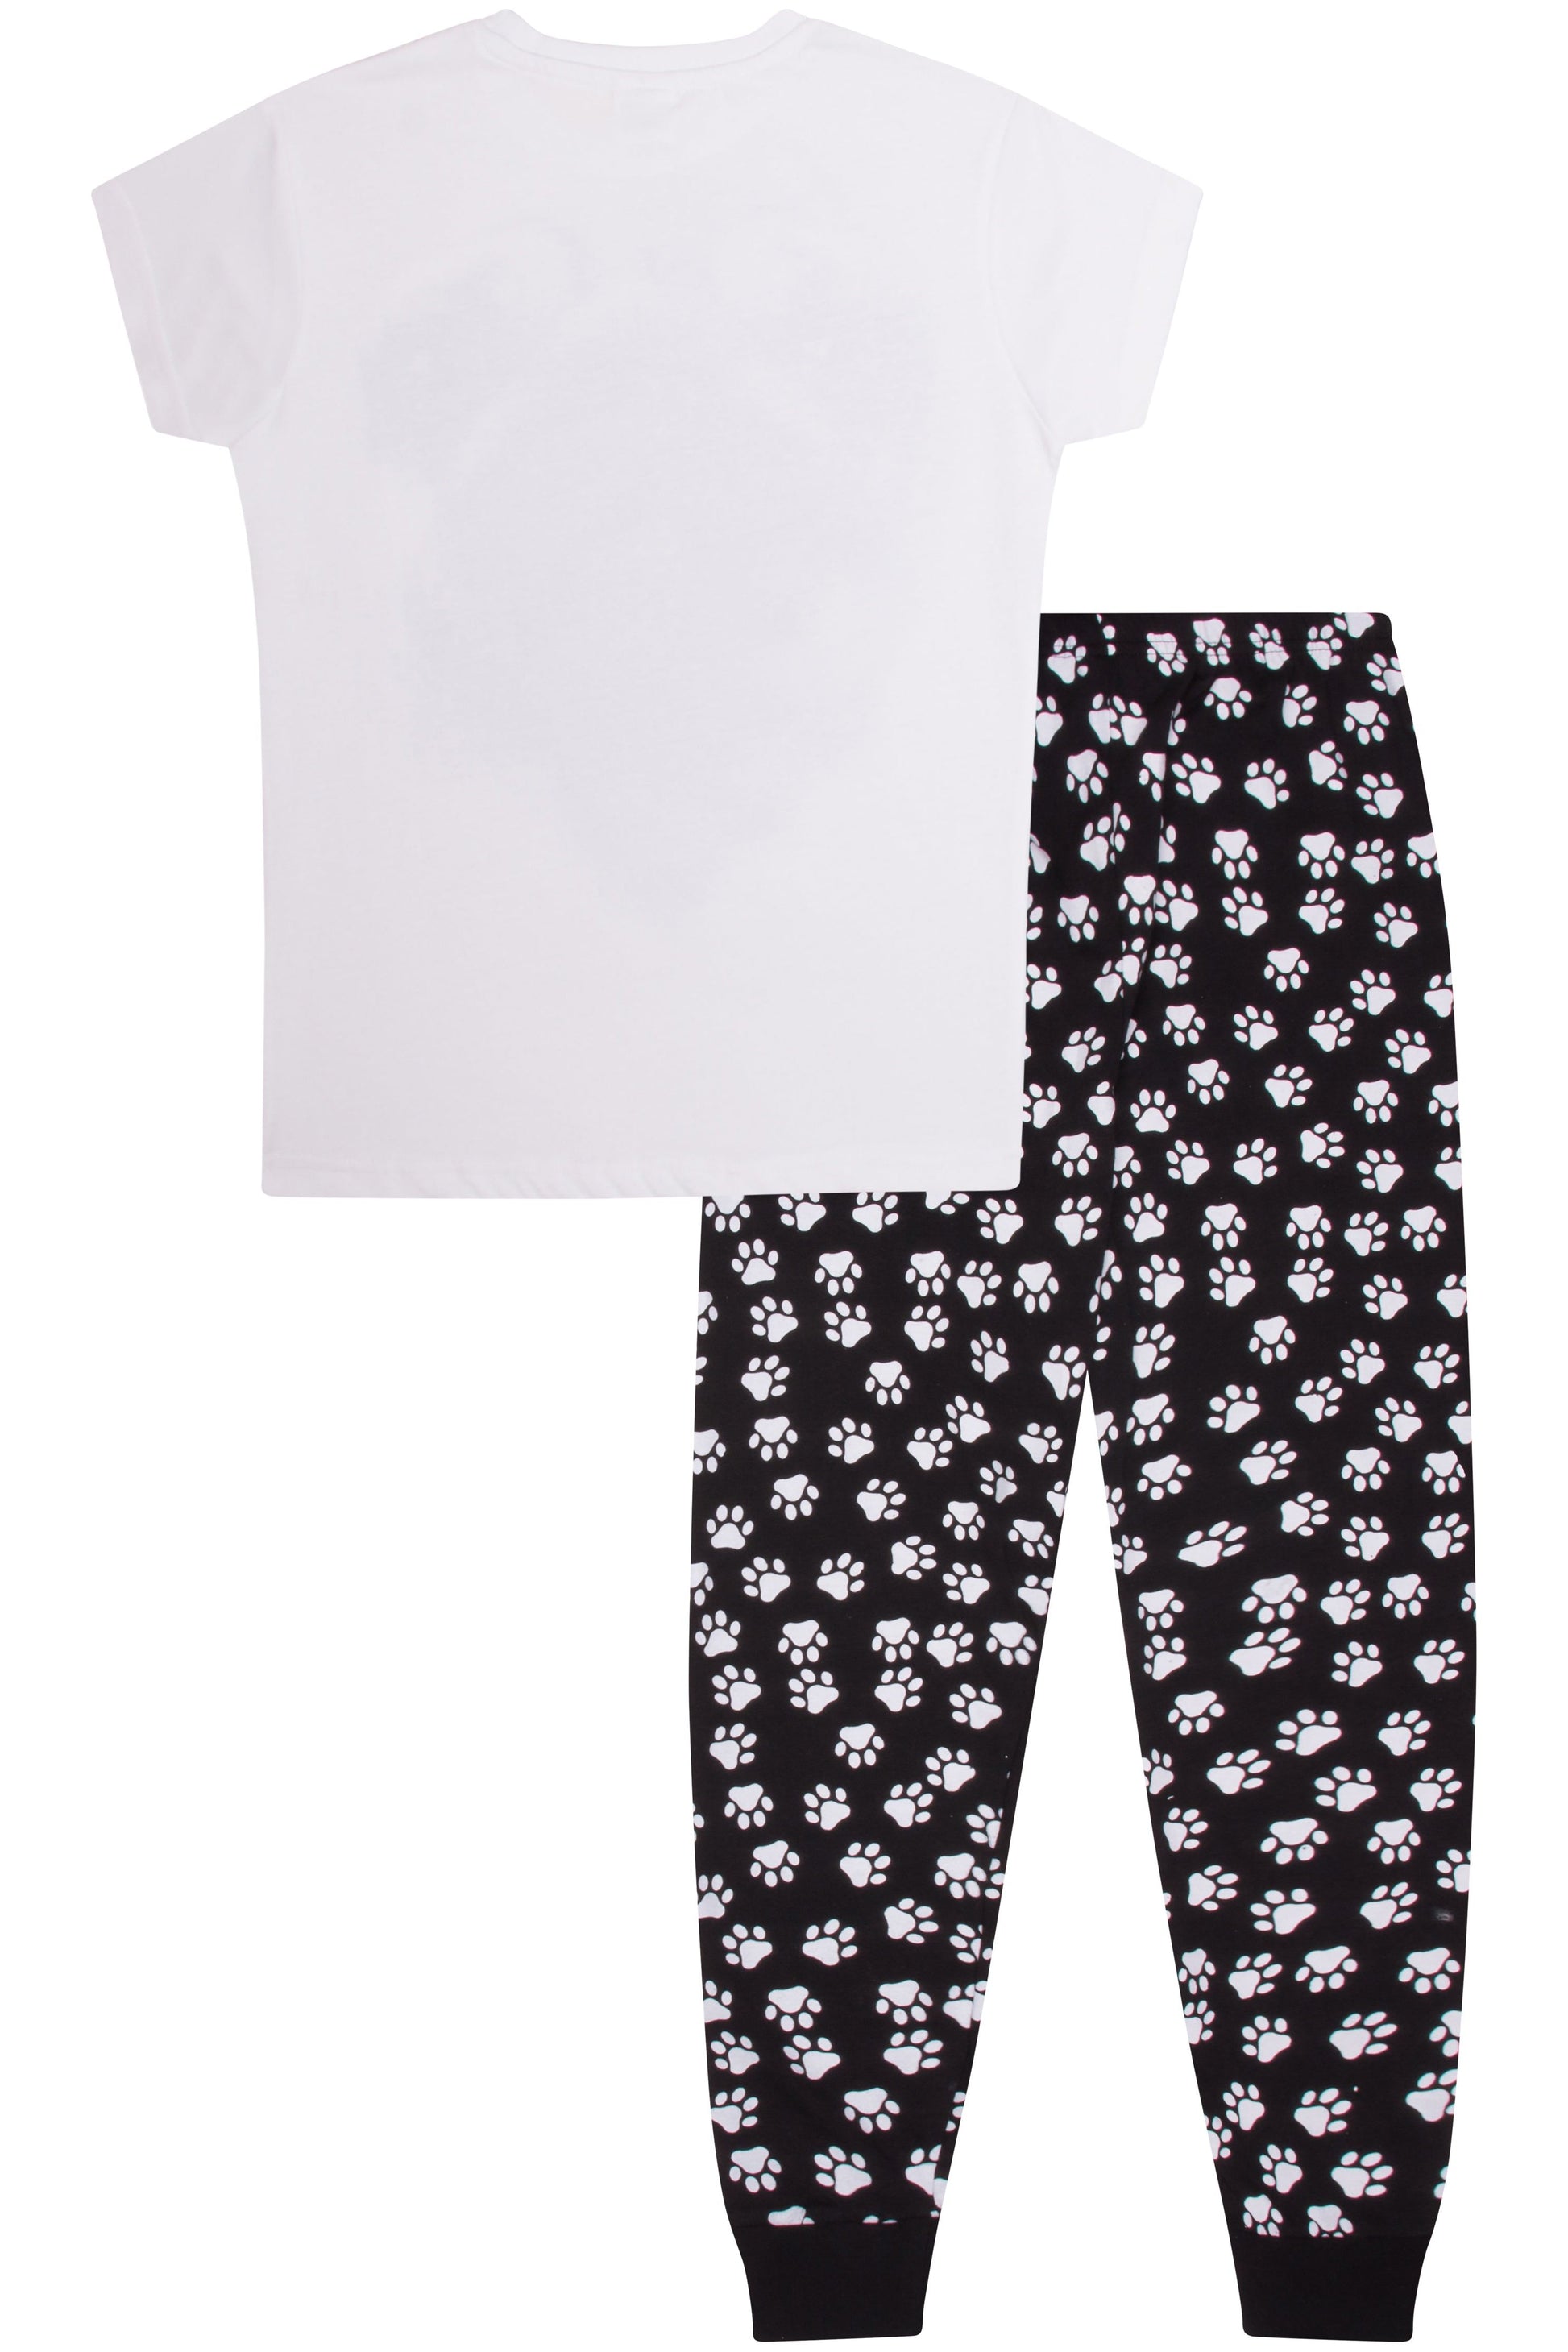 Girls 3D Pug Paw Print Long Pyjamas - Pyjamas.com